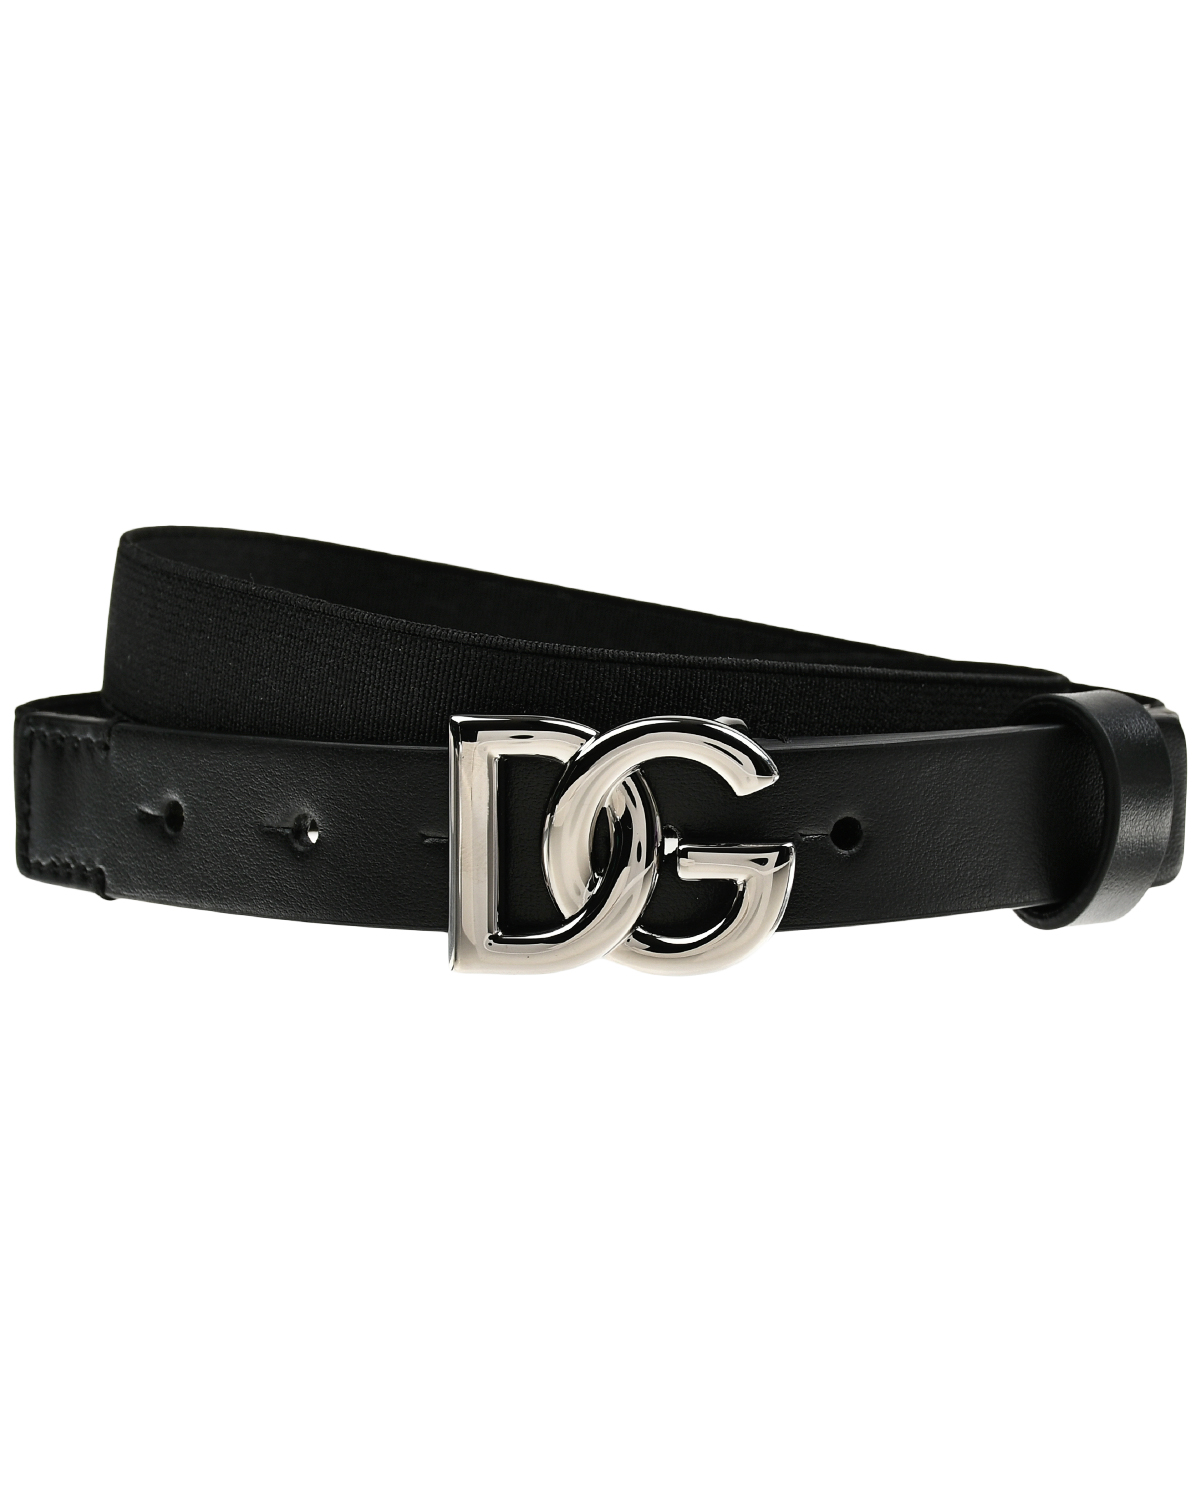 Ремень с металлической пряжкой Dolce&Gabbana, размер S, цвет черный - фото 1